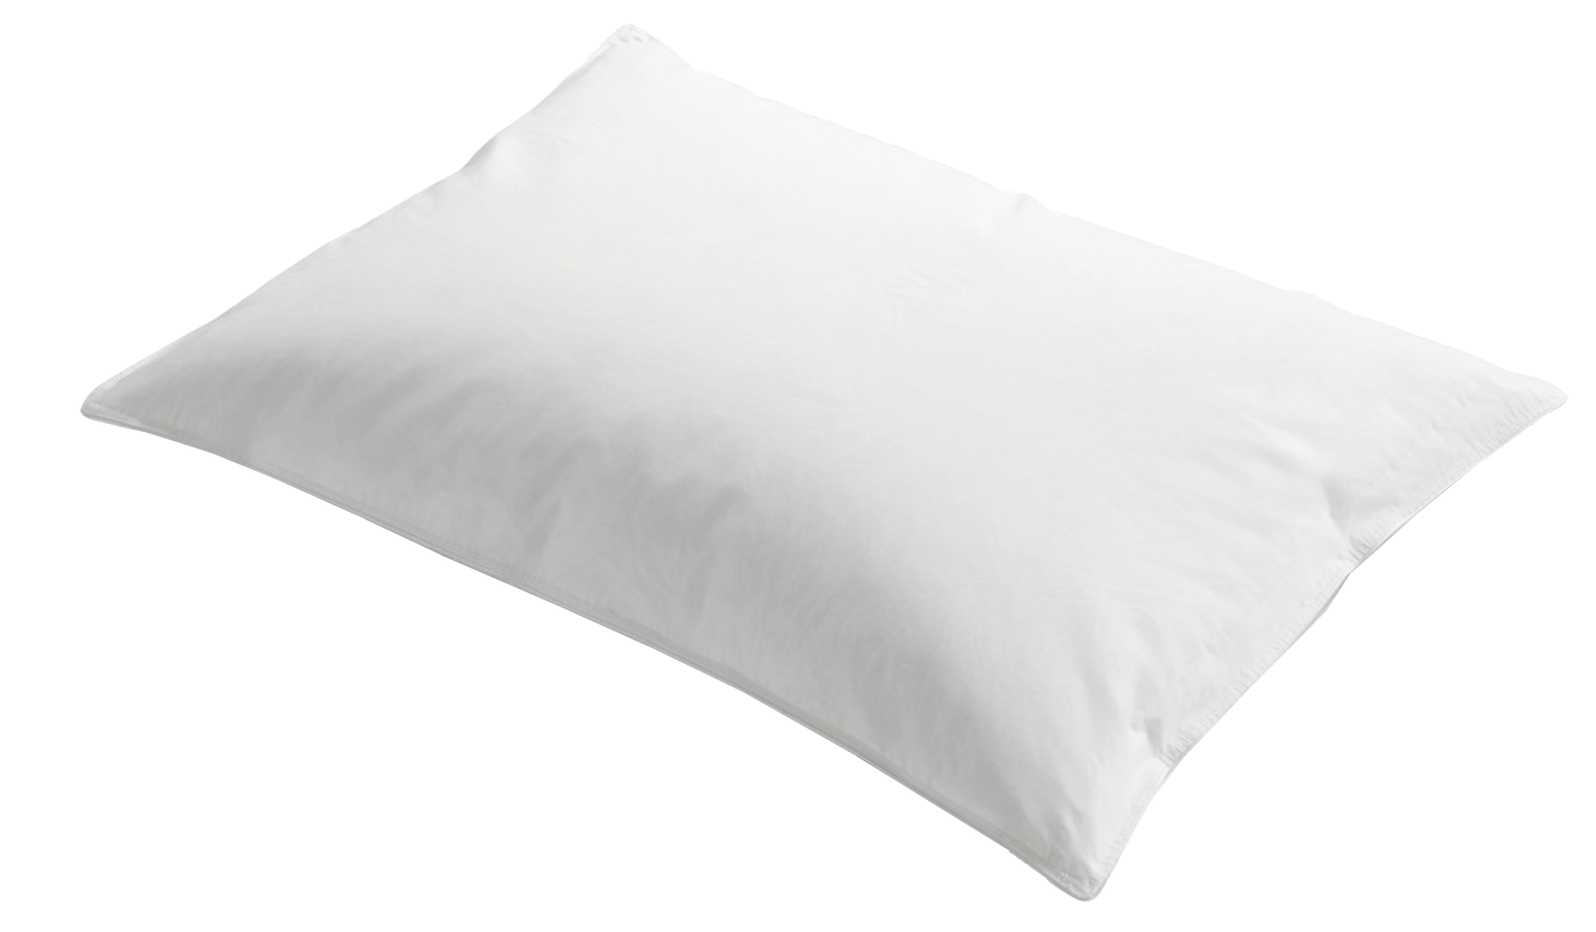 Un cuscino bianco è seduto su una superficie bianca.